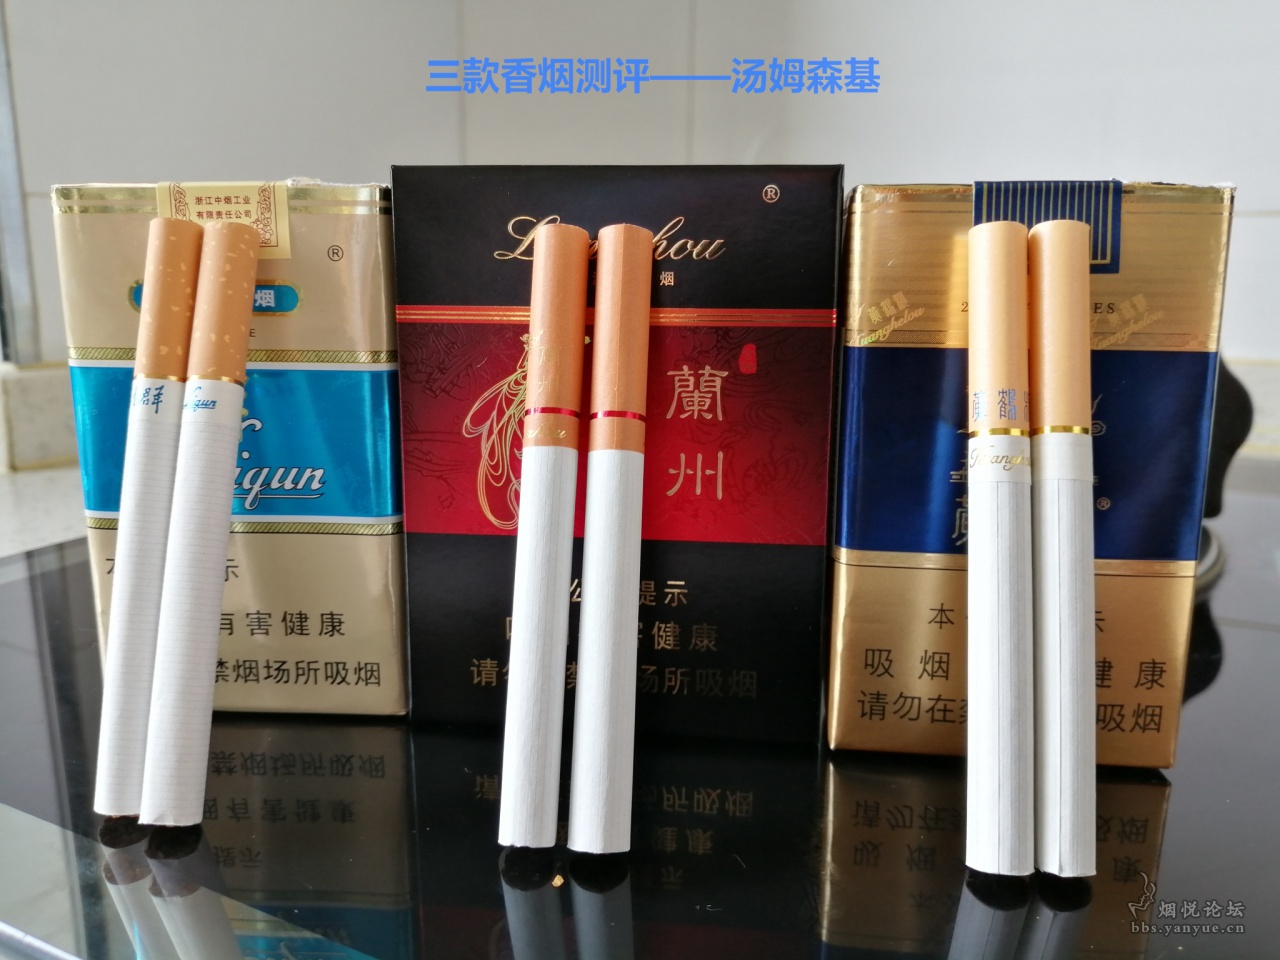 今日口粮 - 香烟漫谈 - 烟悦网论坛